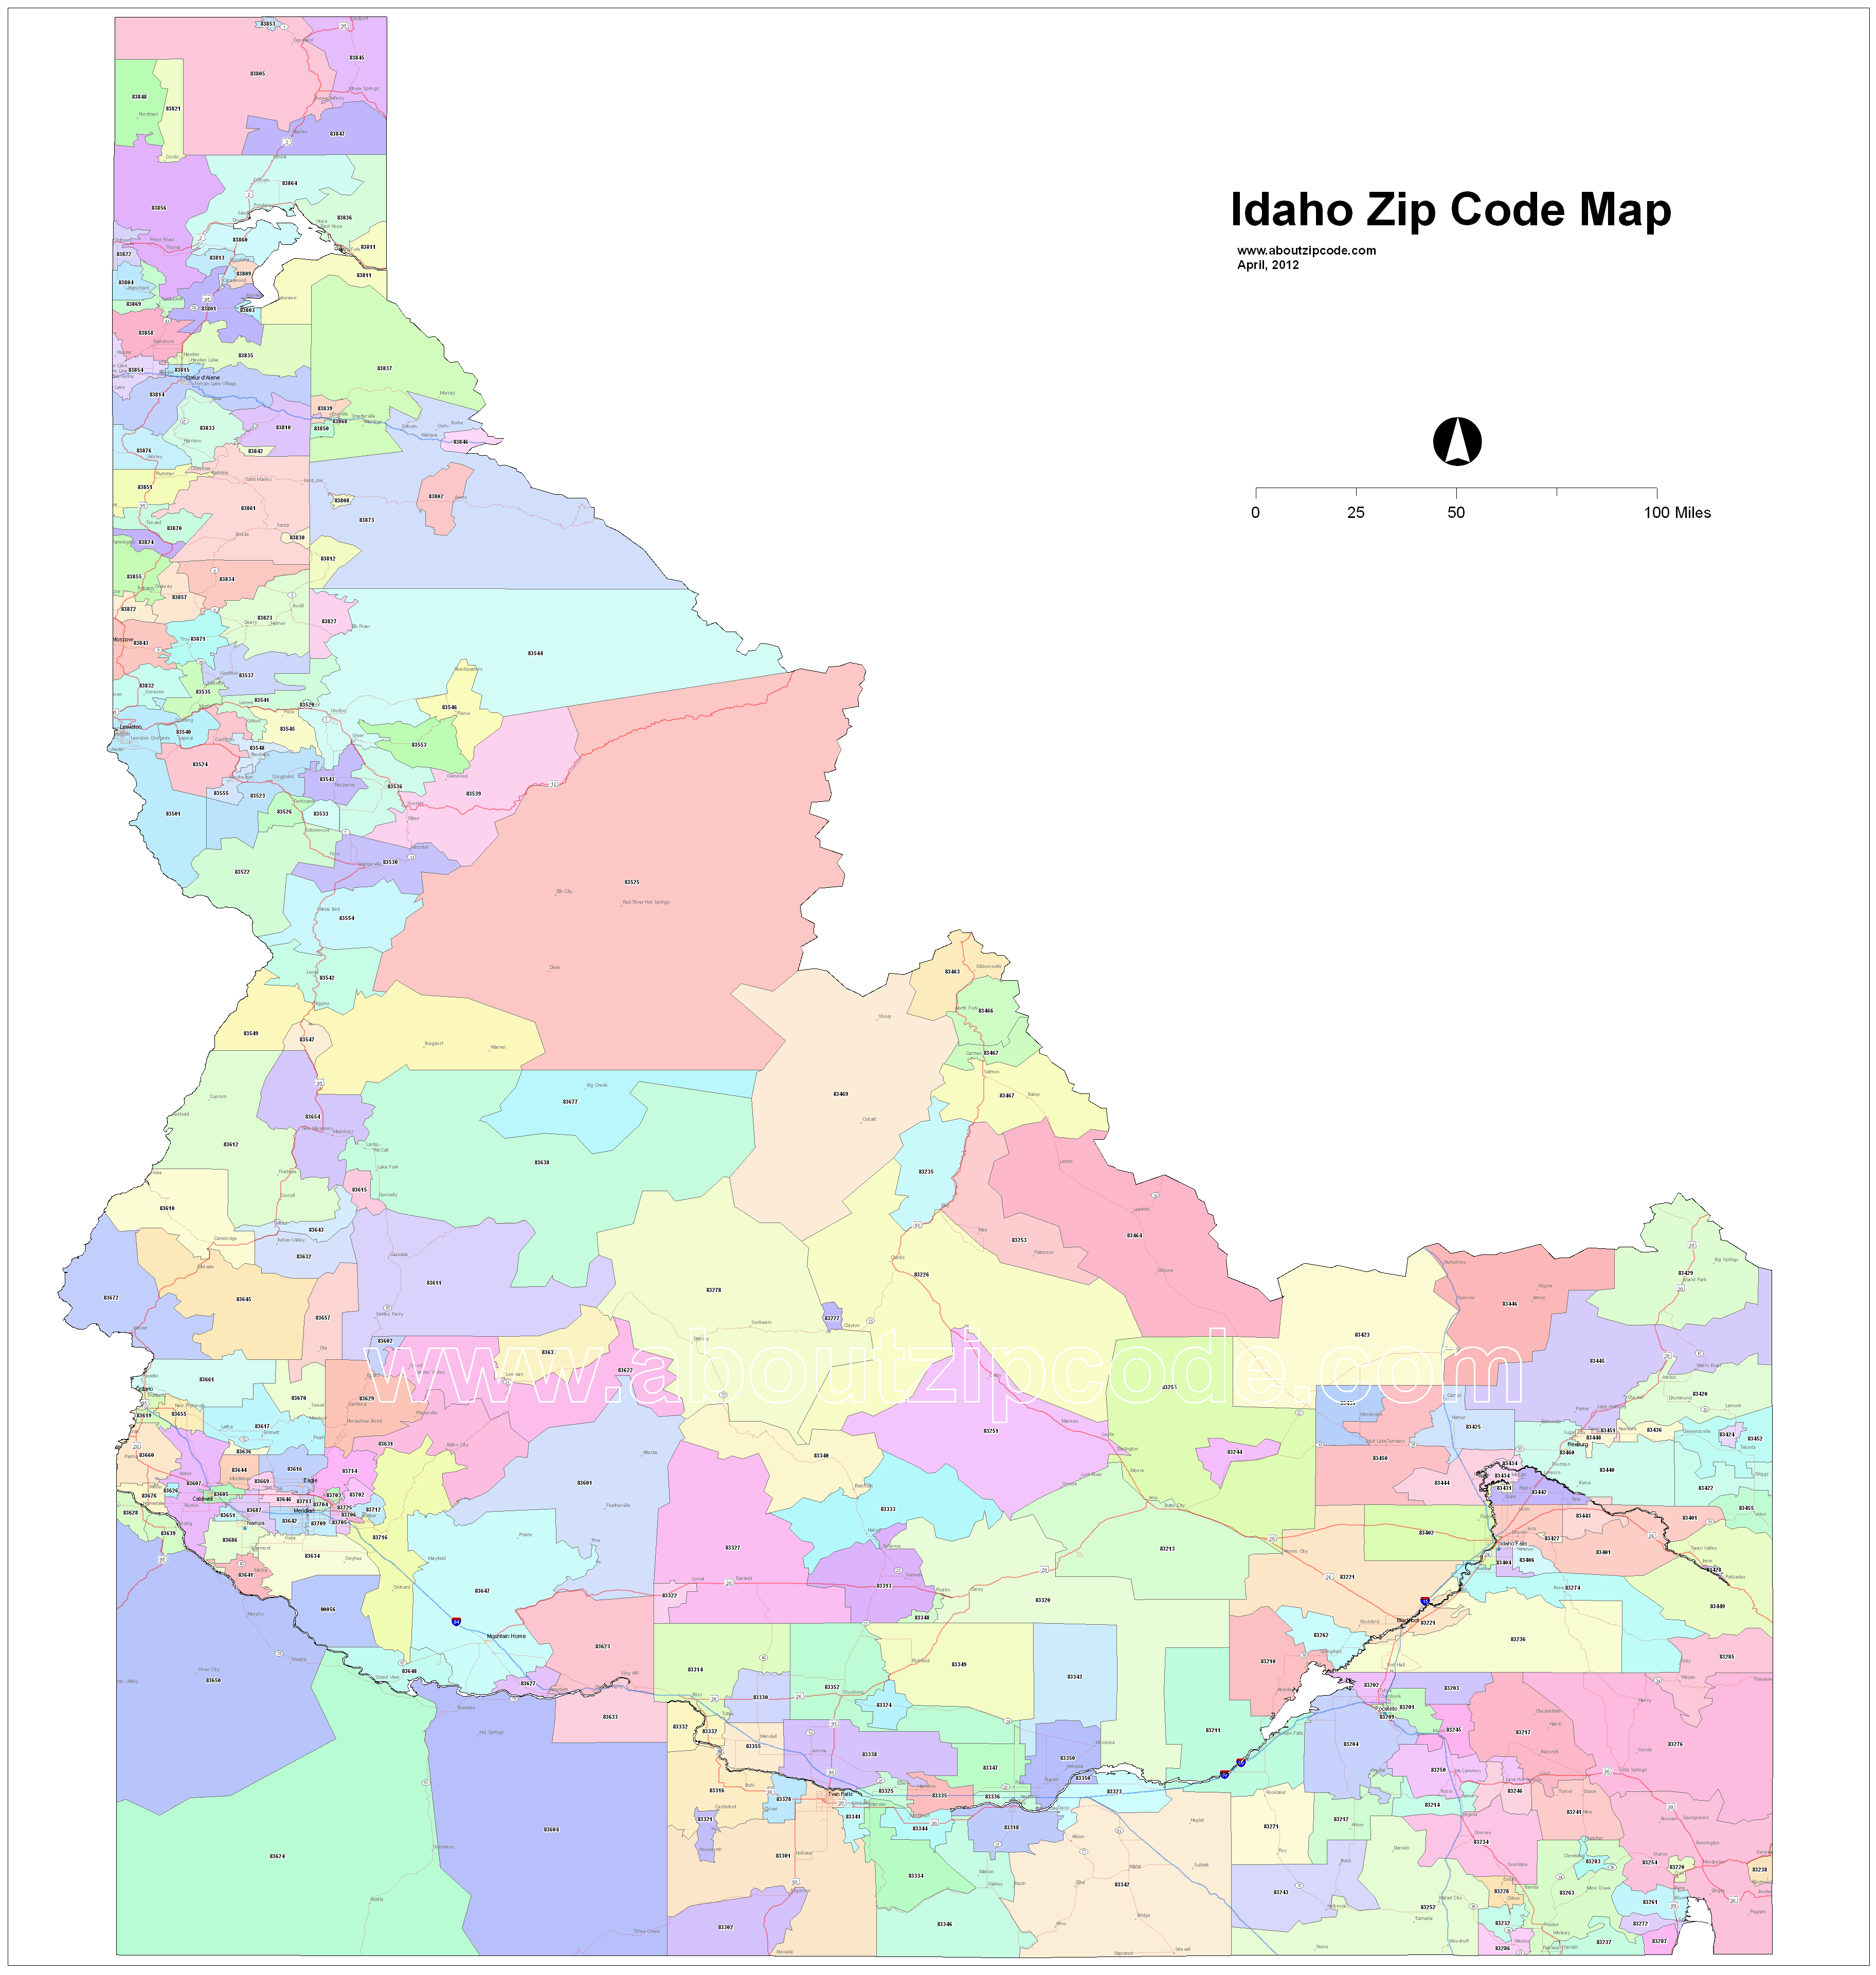 pocatello idaho zip code map Idaho Zip Code Maps Free Idaho Zip Code Maps pocatello idaho zip code map